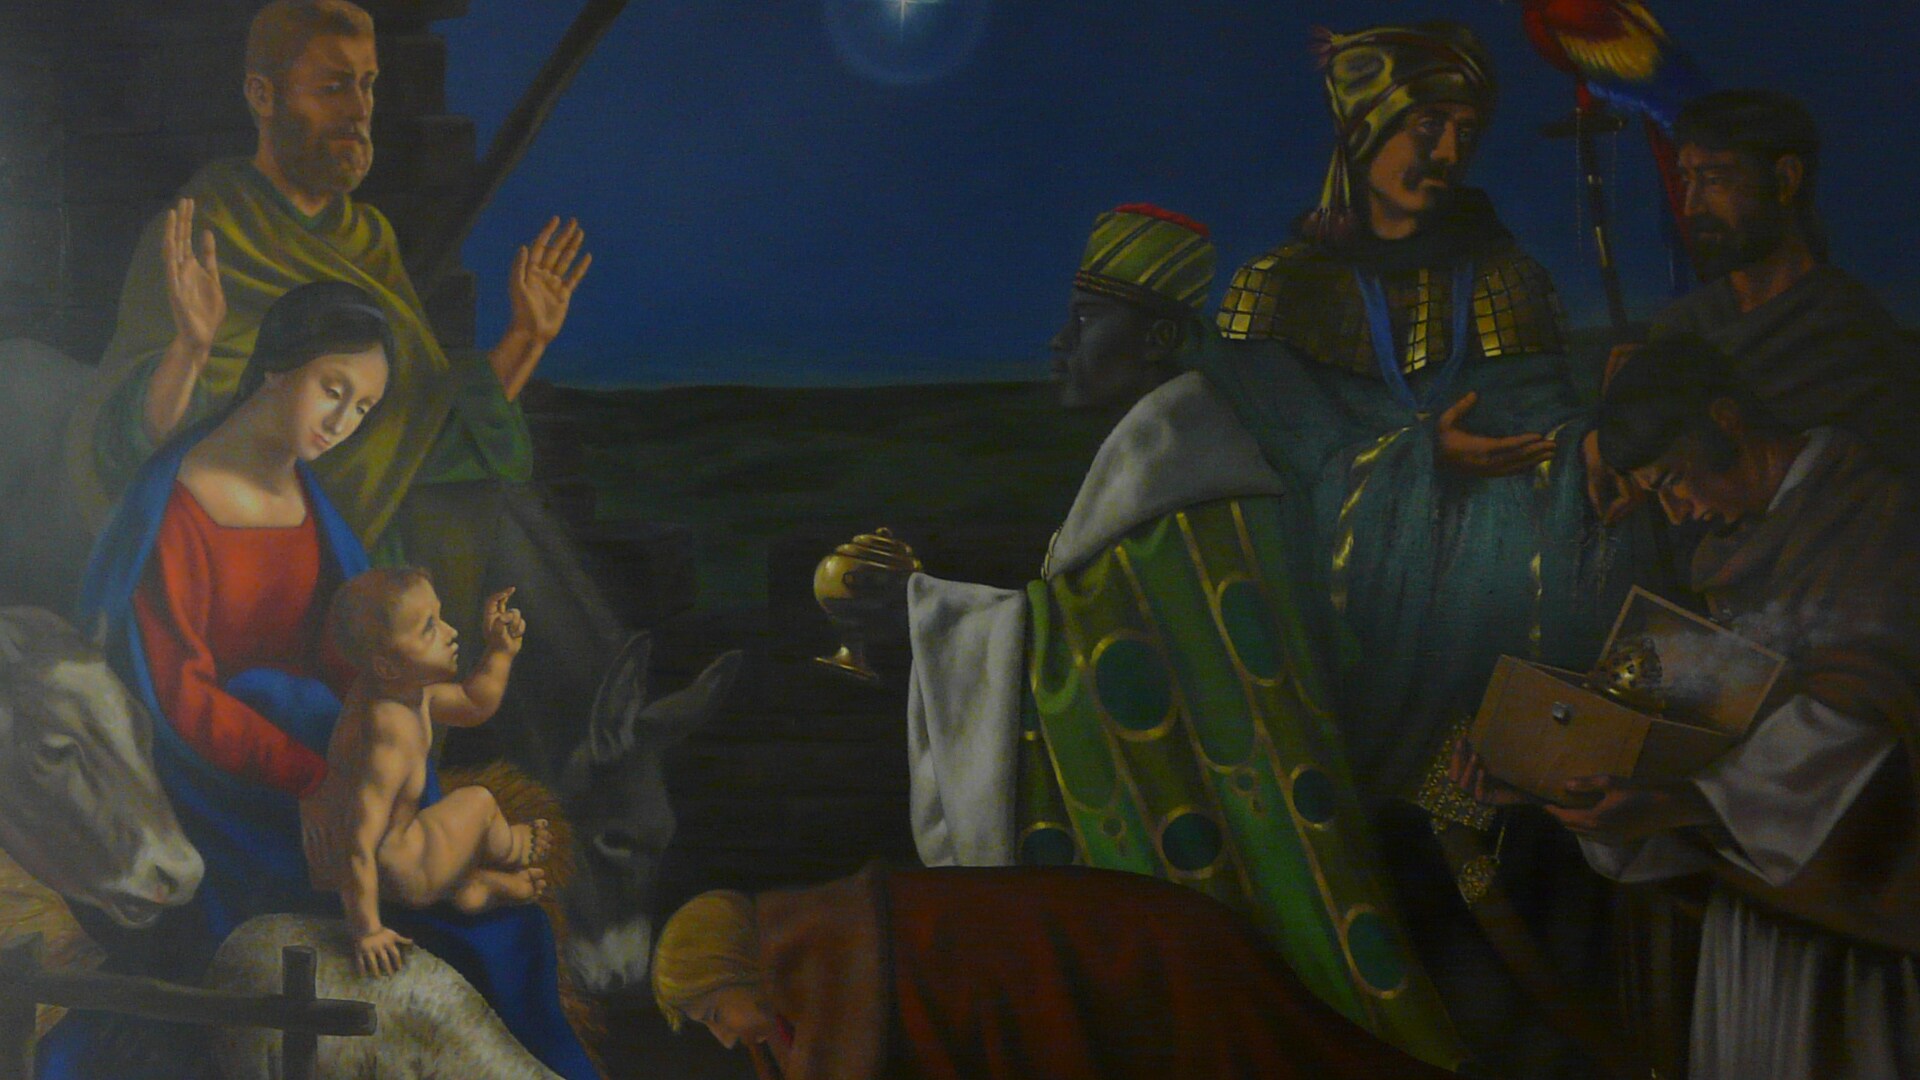  Adorazione dei Magi, Rodolfo Papa, 2016, olio su tela 200x260 cm. Pontificia Università Urbaniana, Città del Vaticano